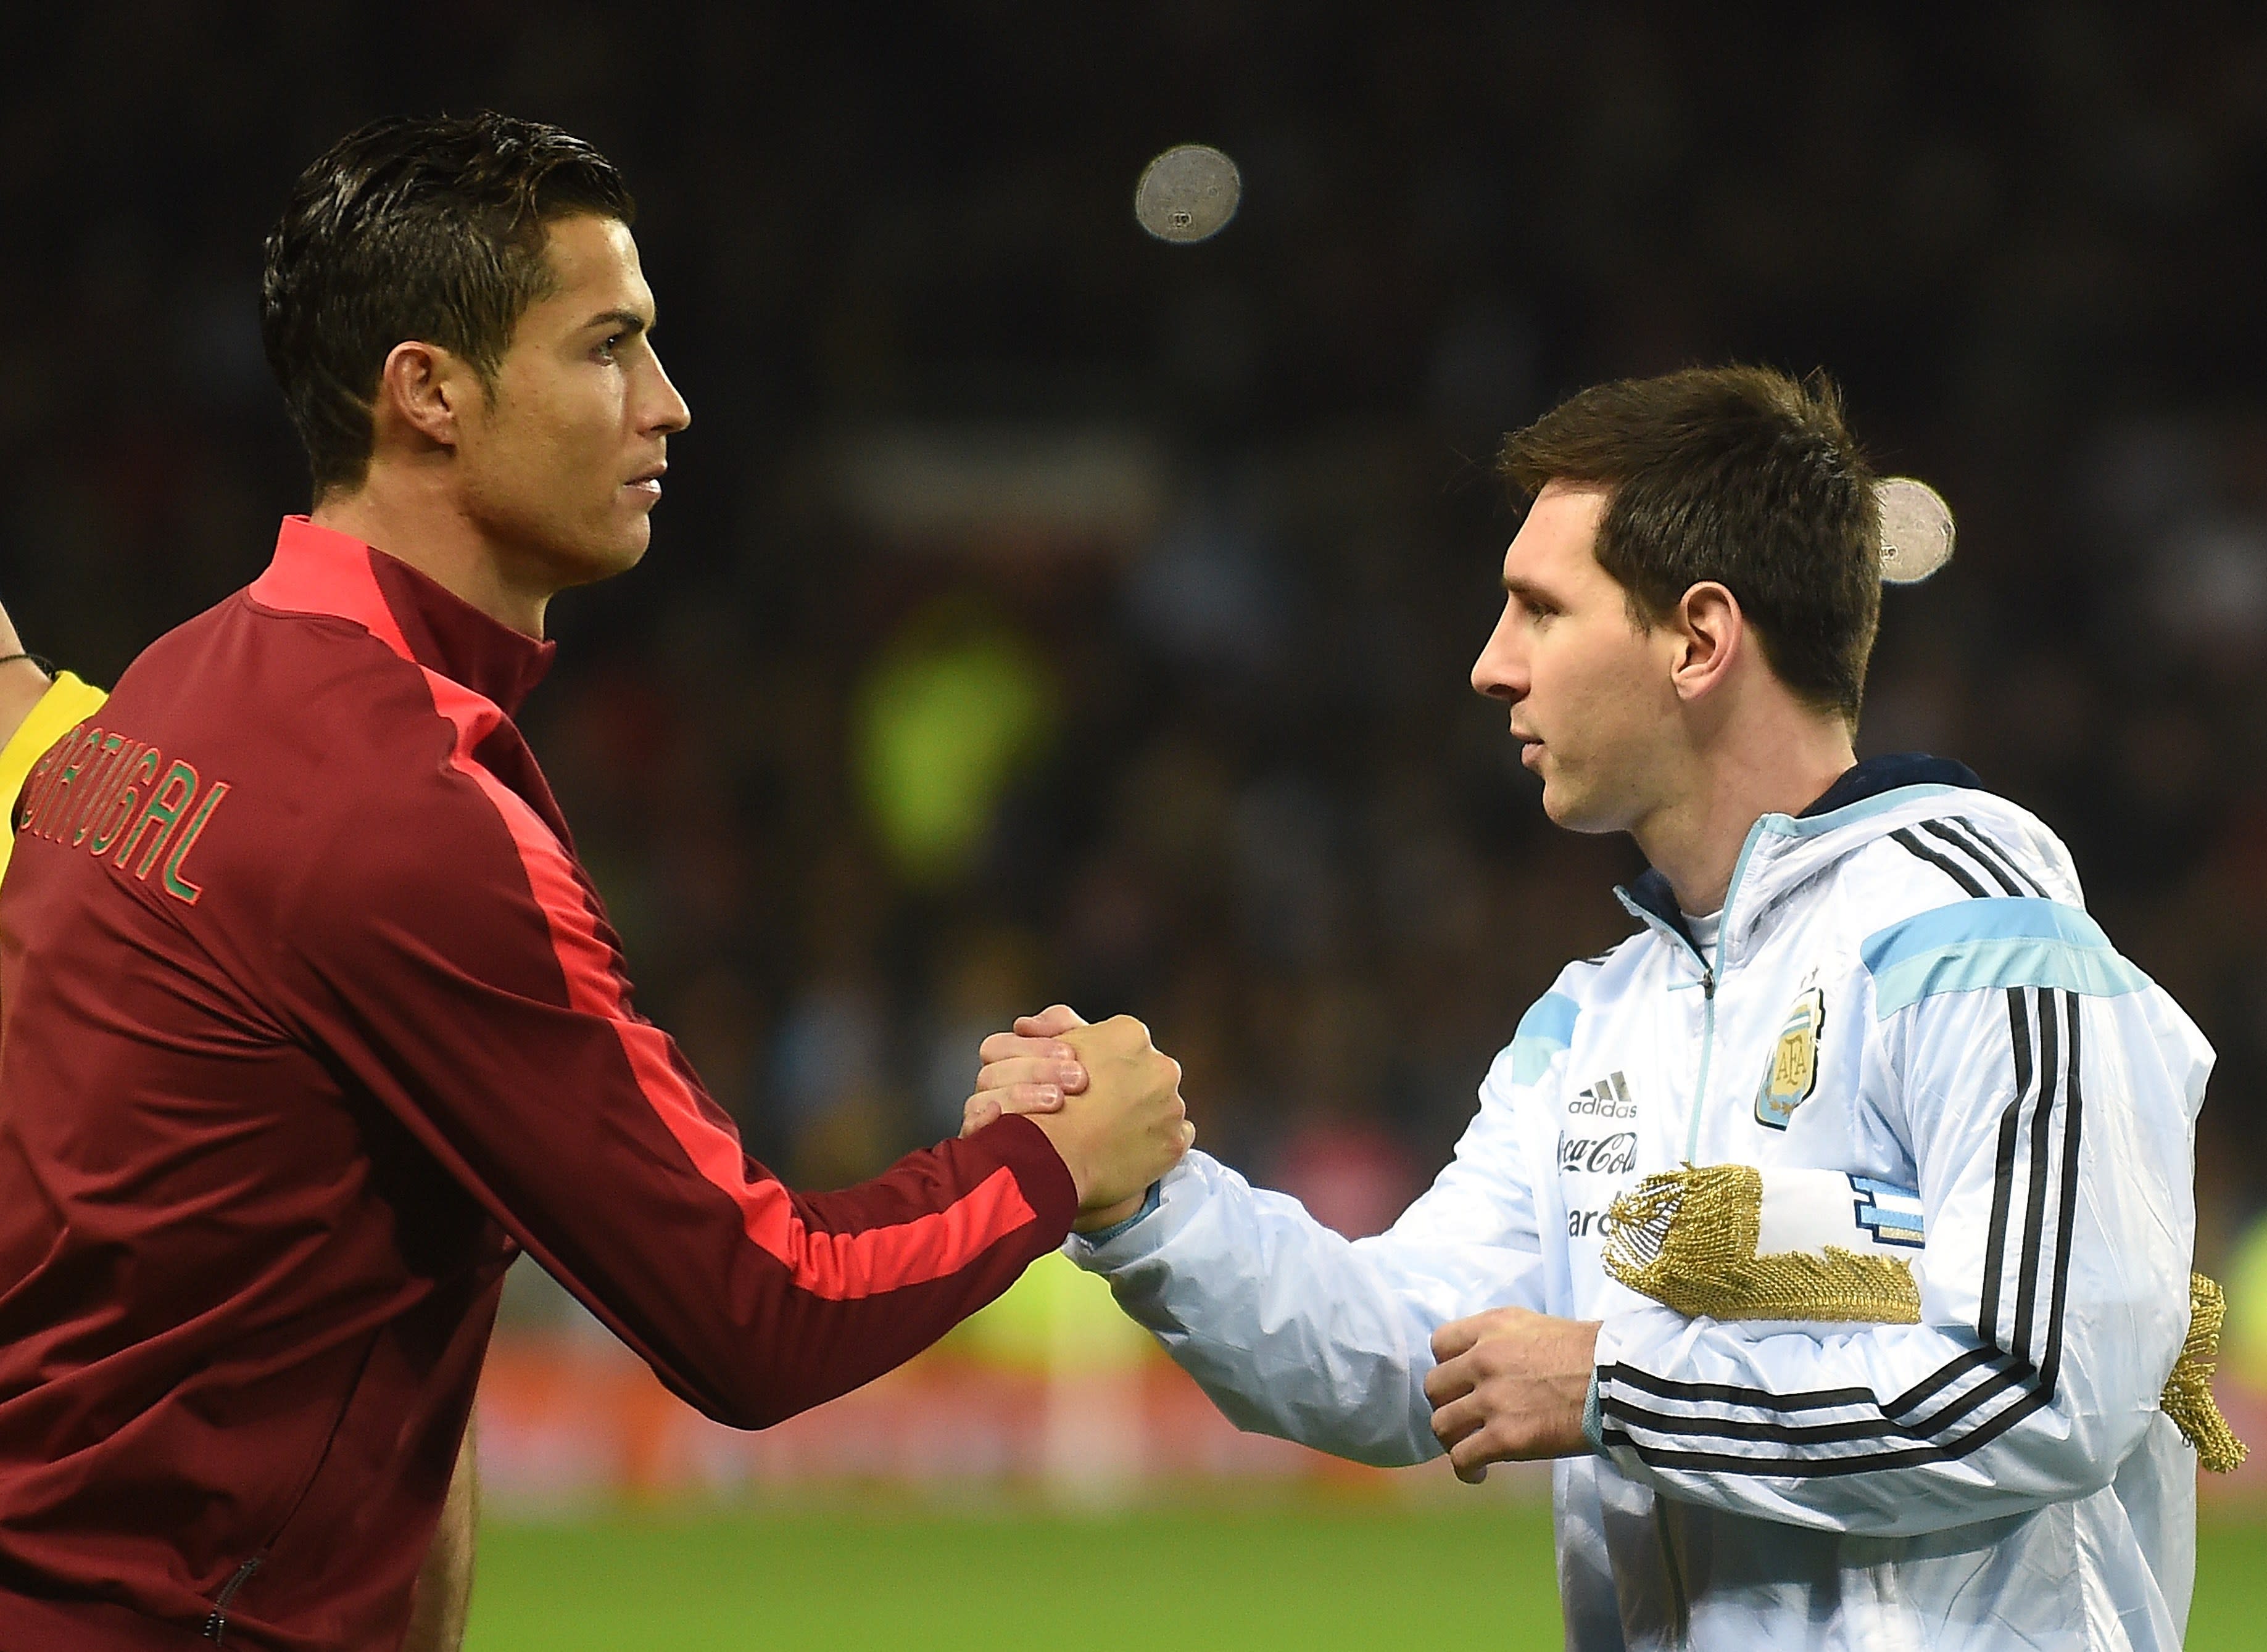 Lionel Messi vs. Cristiano Ronaldo Who's better?